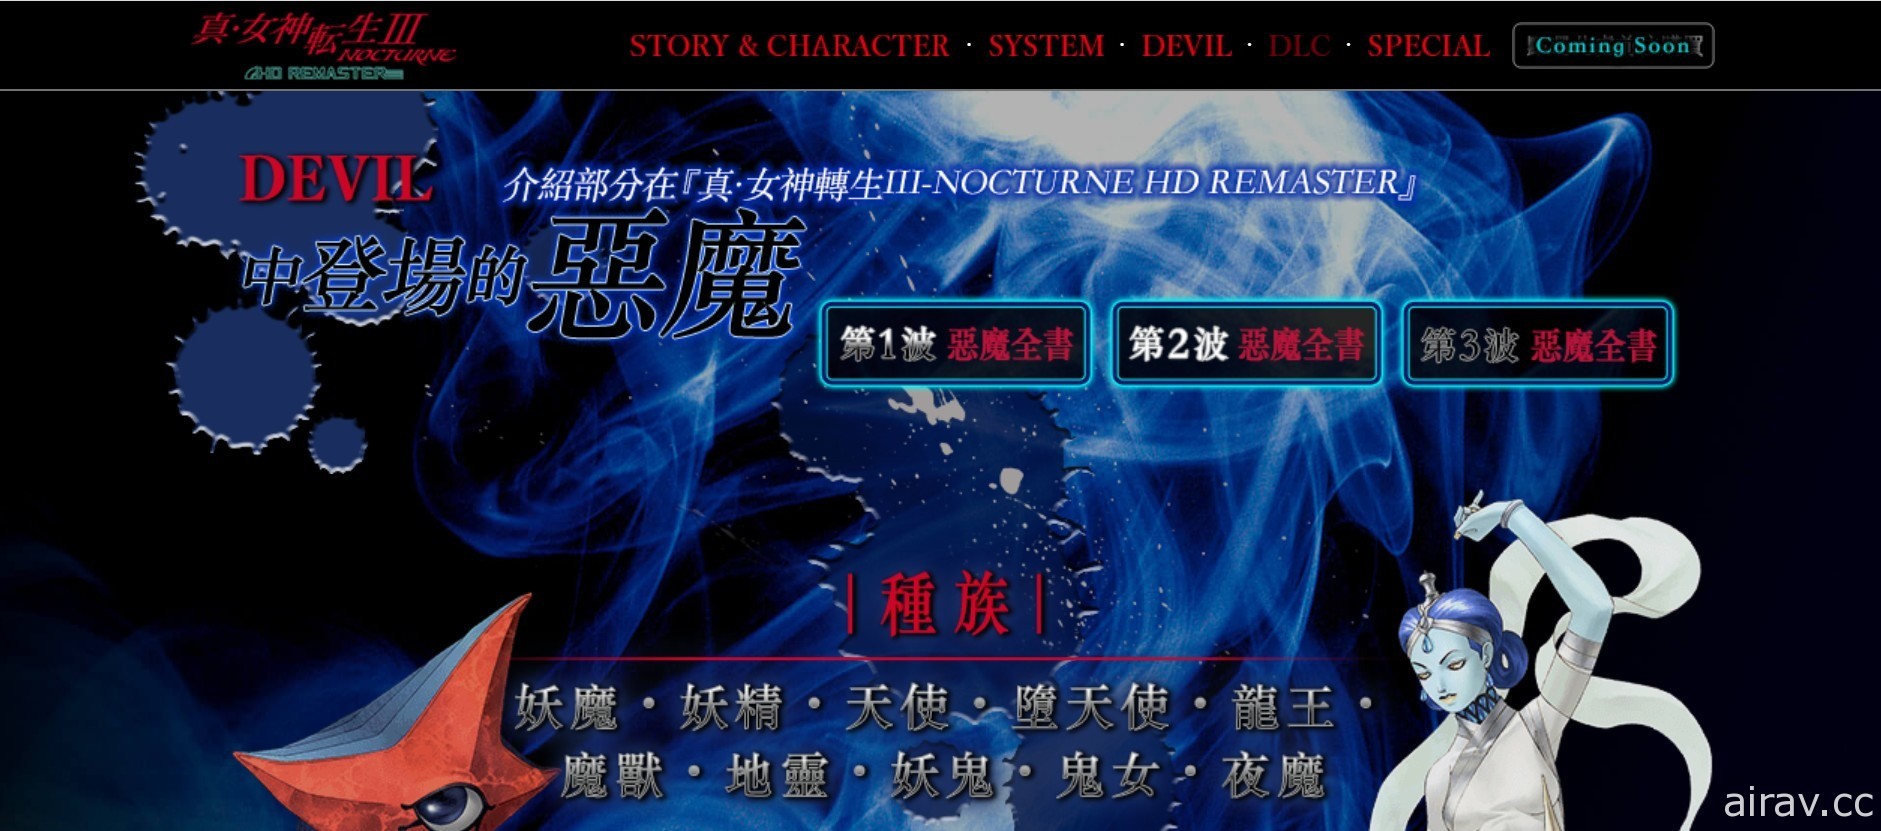 《真‧女神轉生 III Nocturne HD Remaster》「惡魔全書 PV」將連續 3 天依序公開